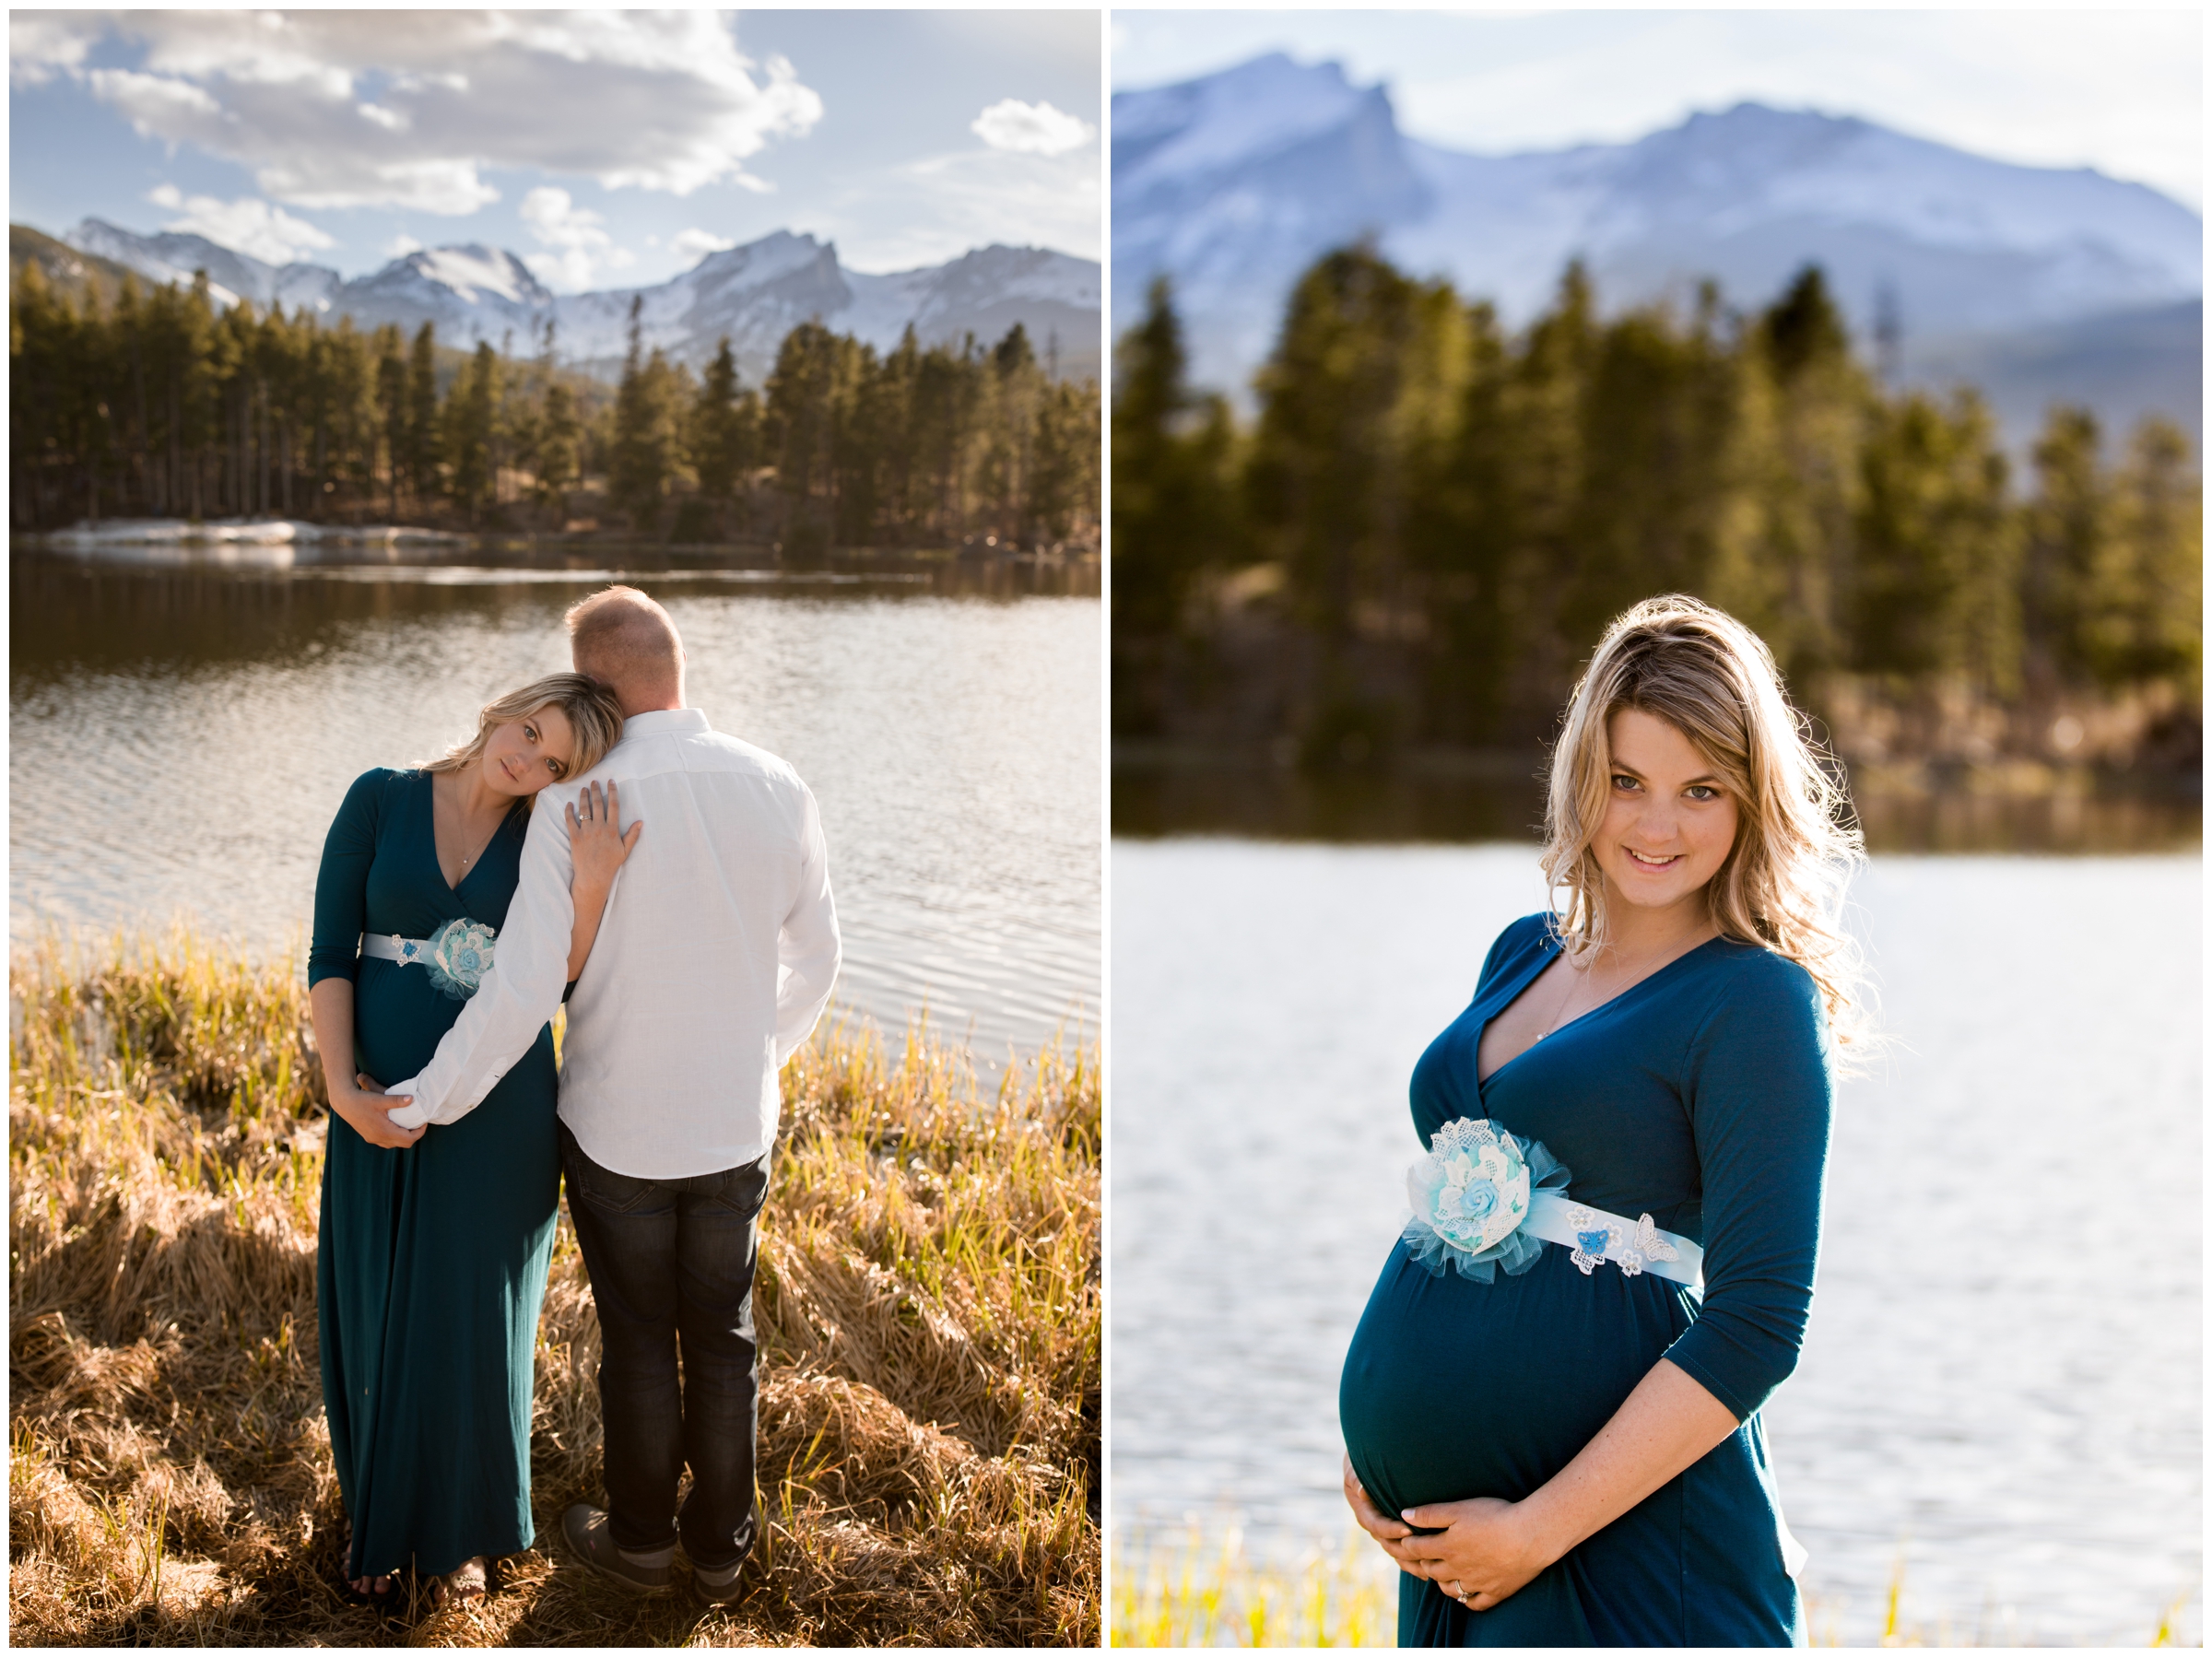 Rocky Mountain National Park Colorado maternity photos at Sprague Lake 